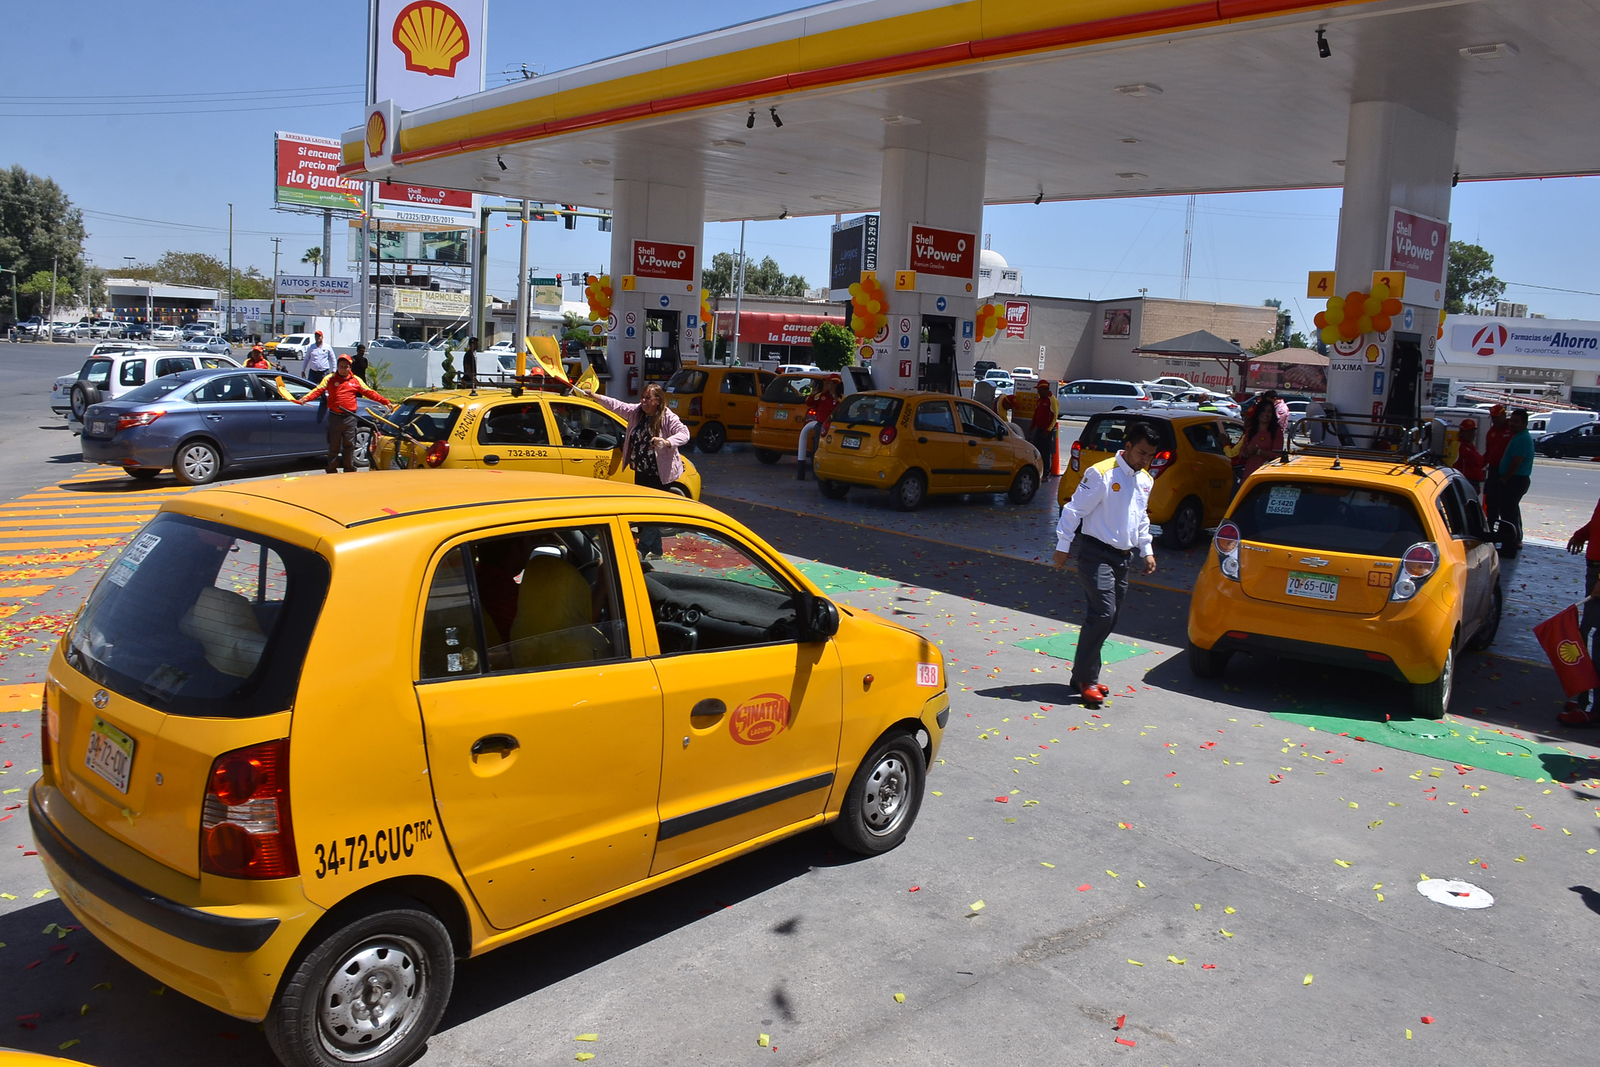 Conoce los distintos tipos de gasolina, México